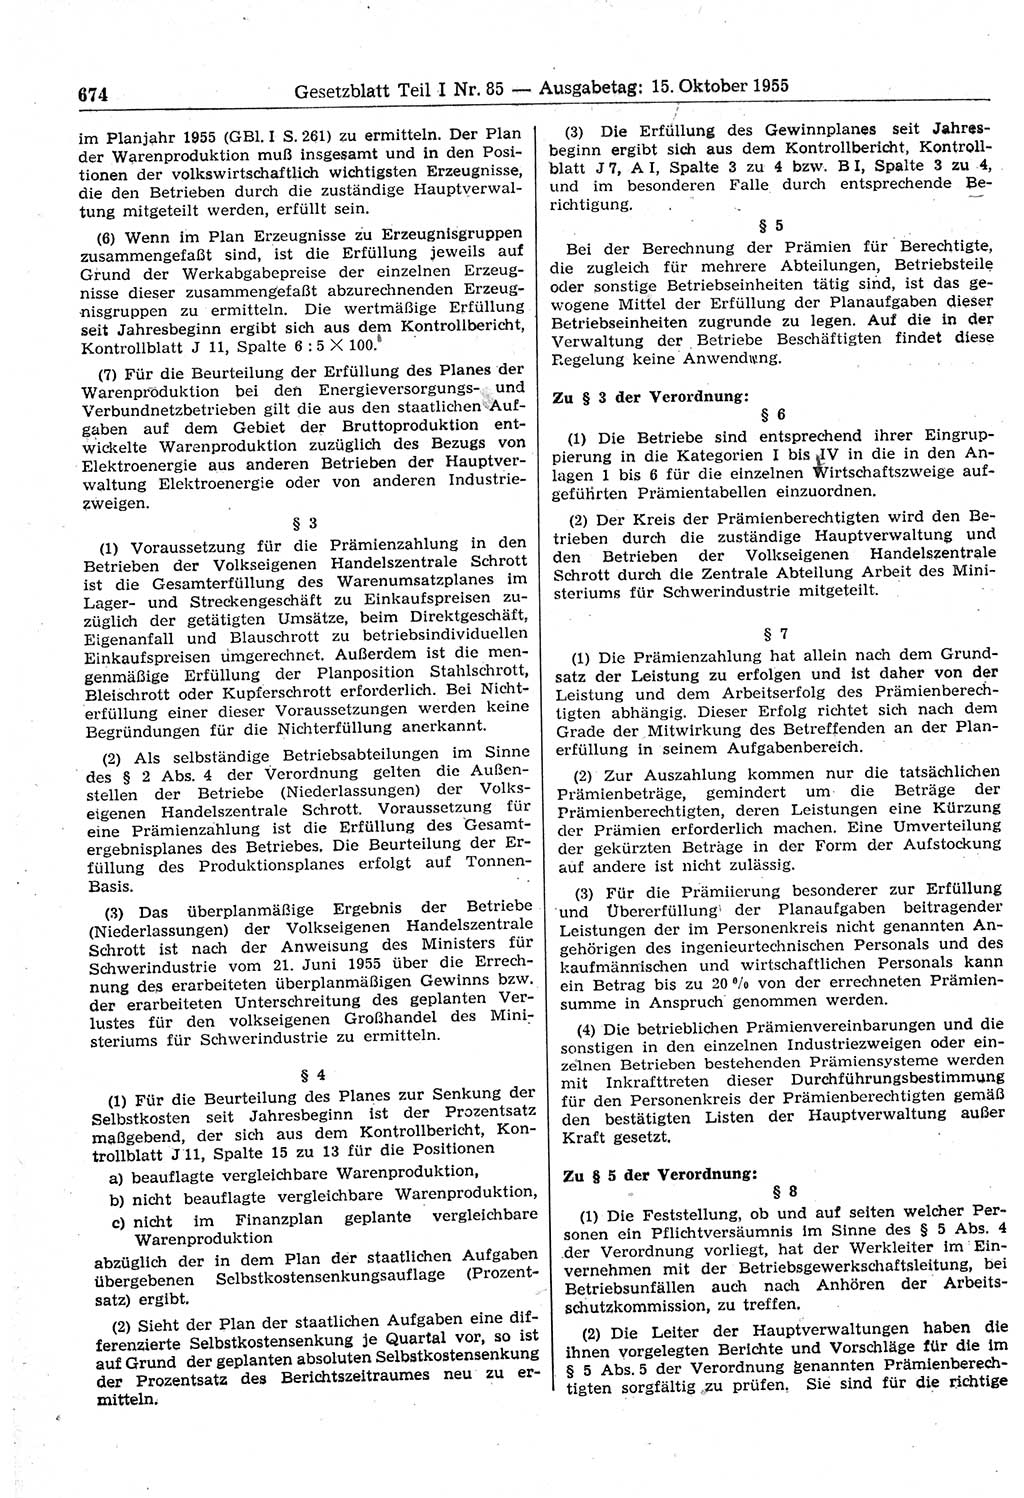 Gesetzblatt (GBl.) der Deutschen Demokratischen Republik (DDR) Teil Ⅰ 1955, Seite 674 (GBl. DDR Ⅰ 1955, S. 674)